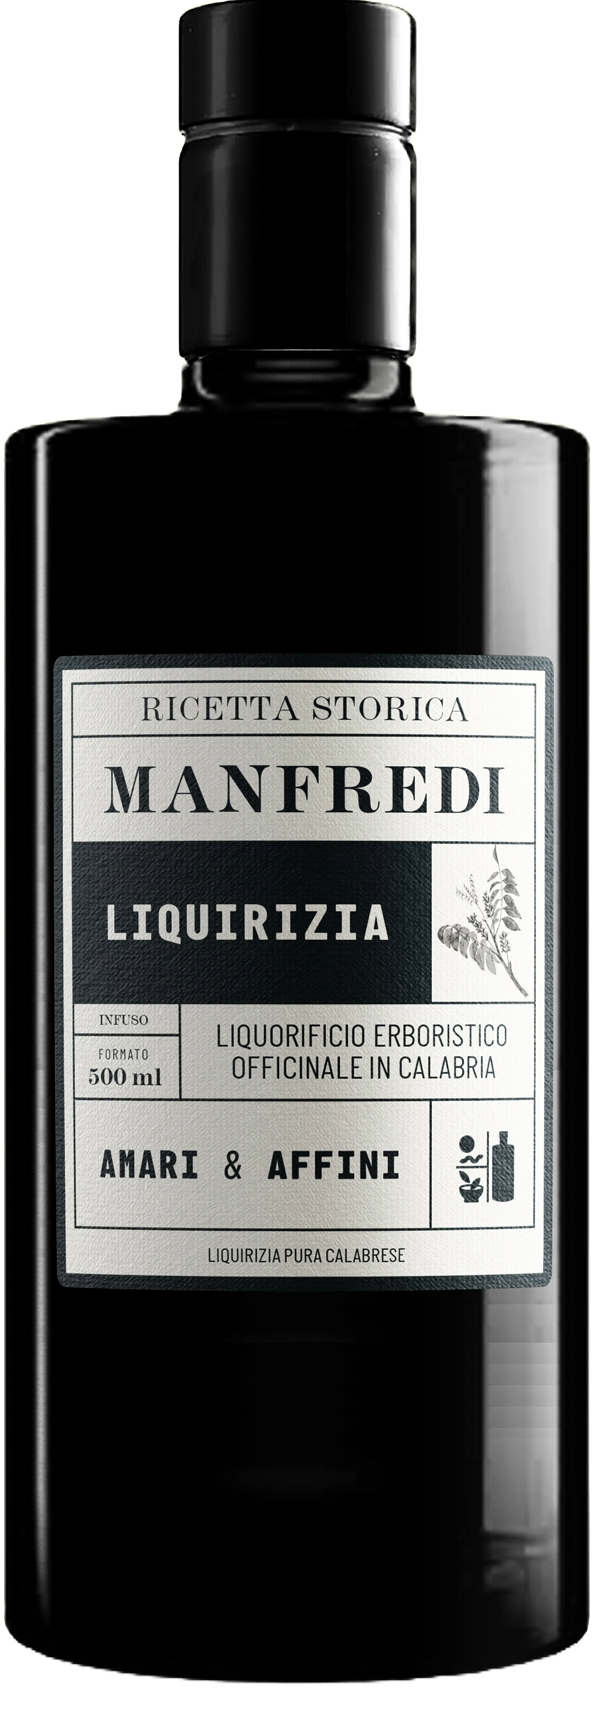 Manfredi - Liquore alla Liquirizia Ricetta storica